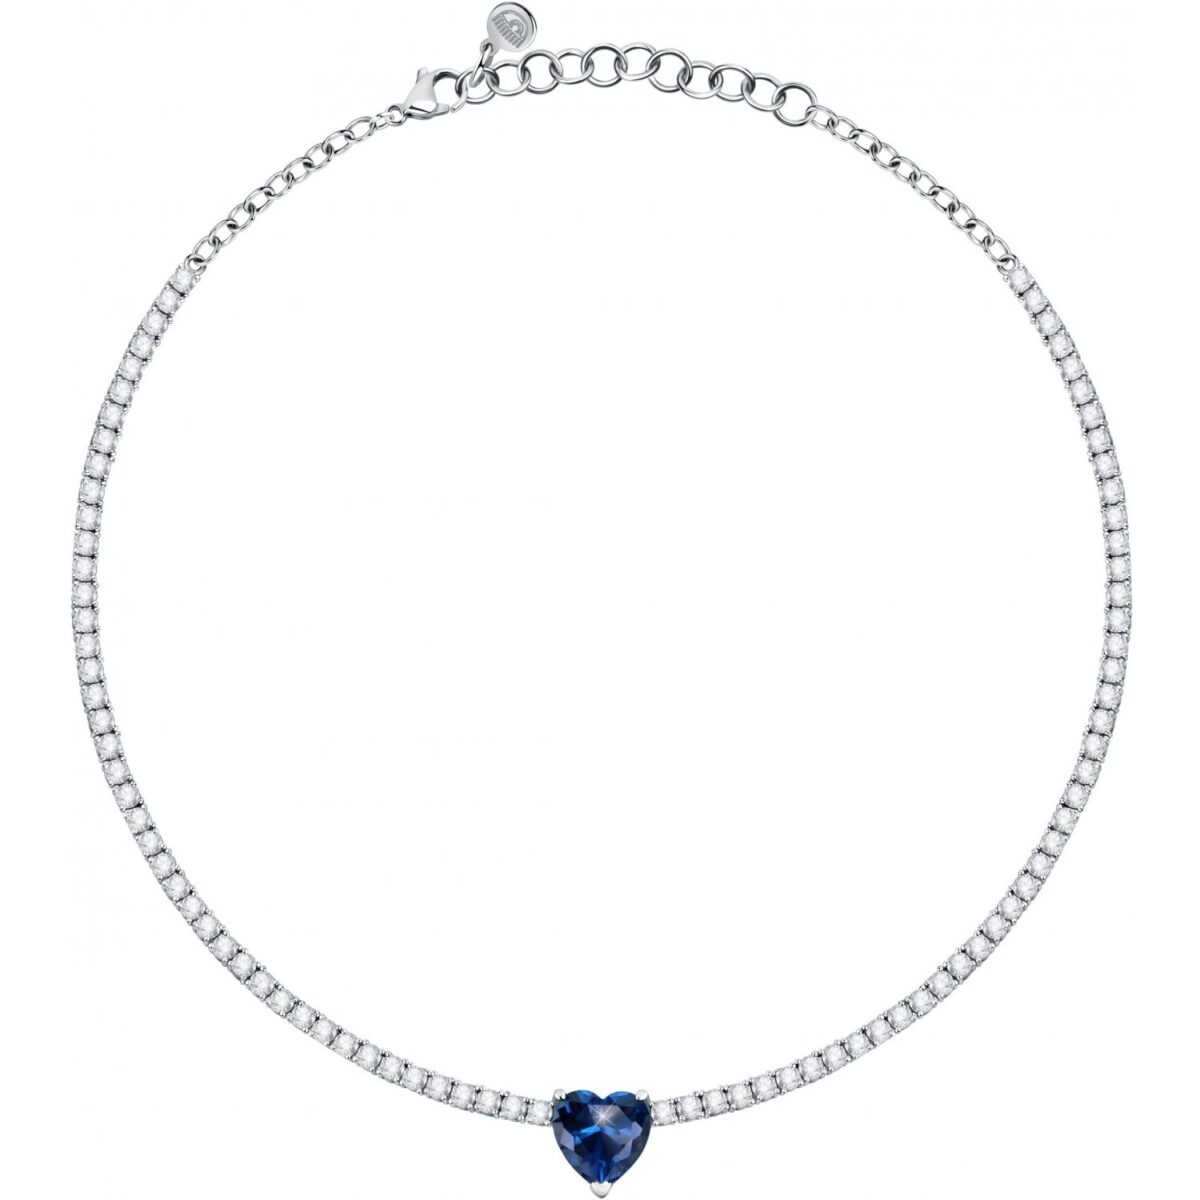 Collana Donna Chiara Ferragni Brand Diamond Heart Cuore Blu Centrale